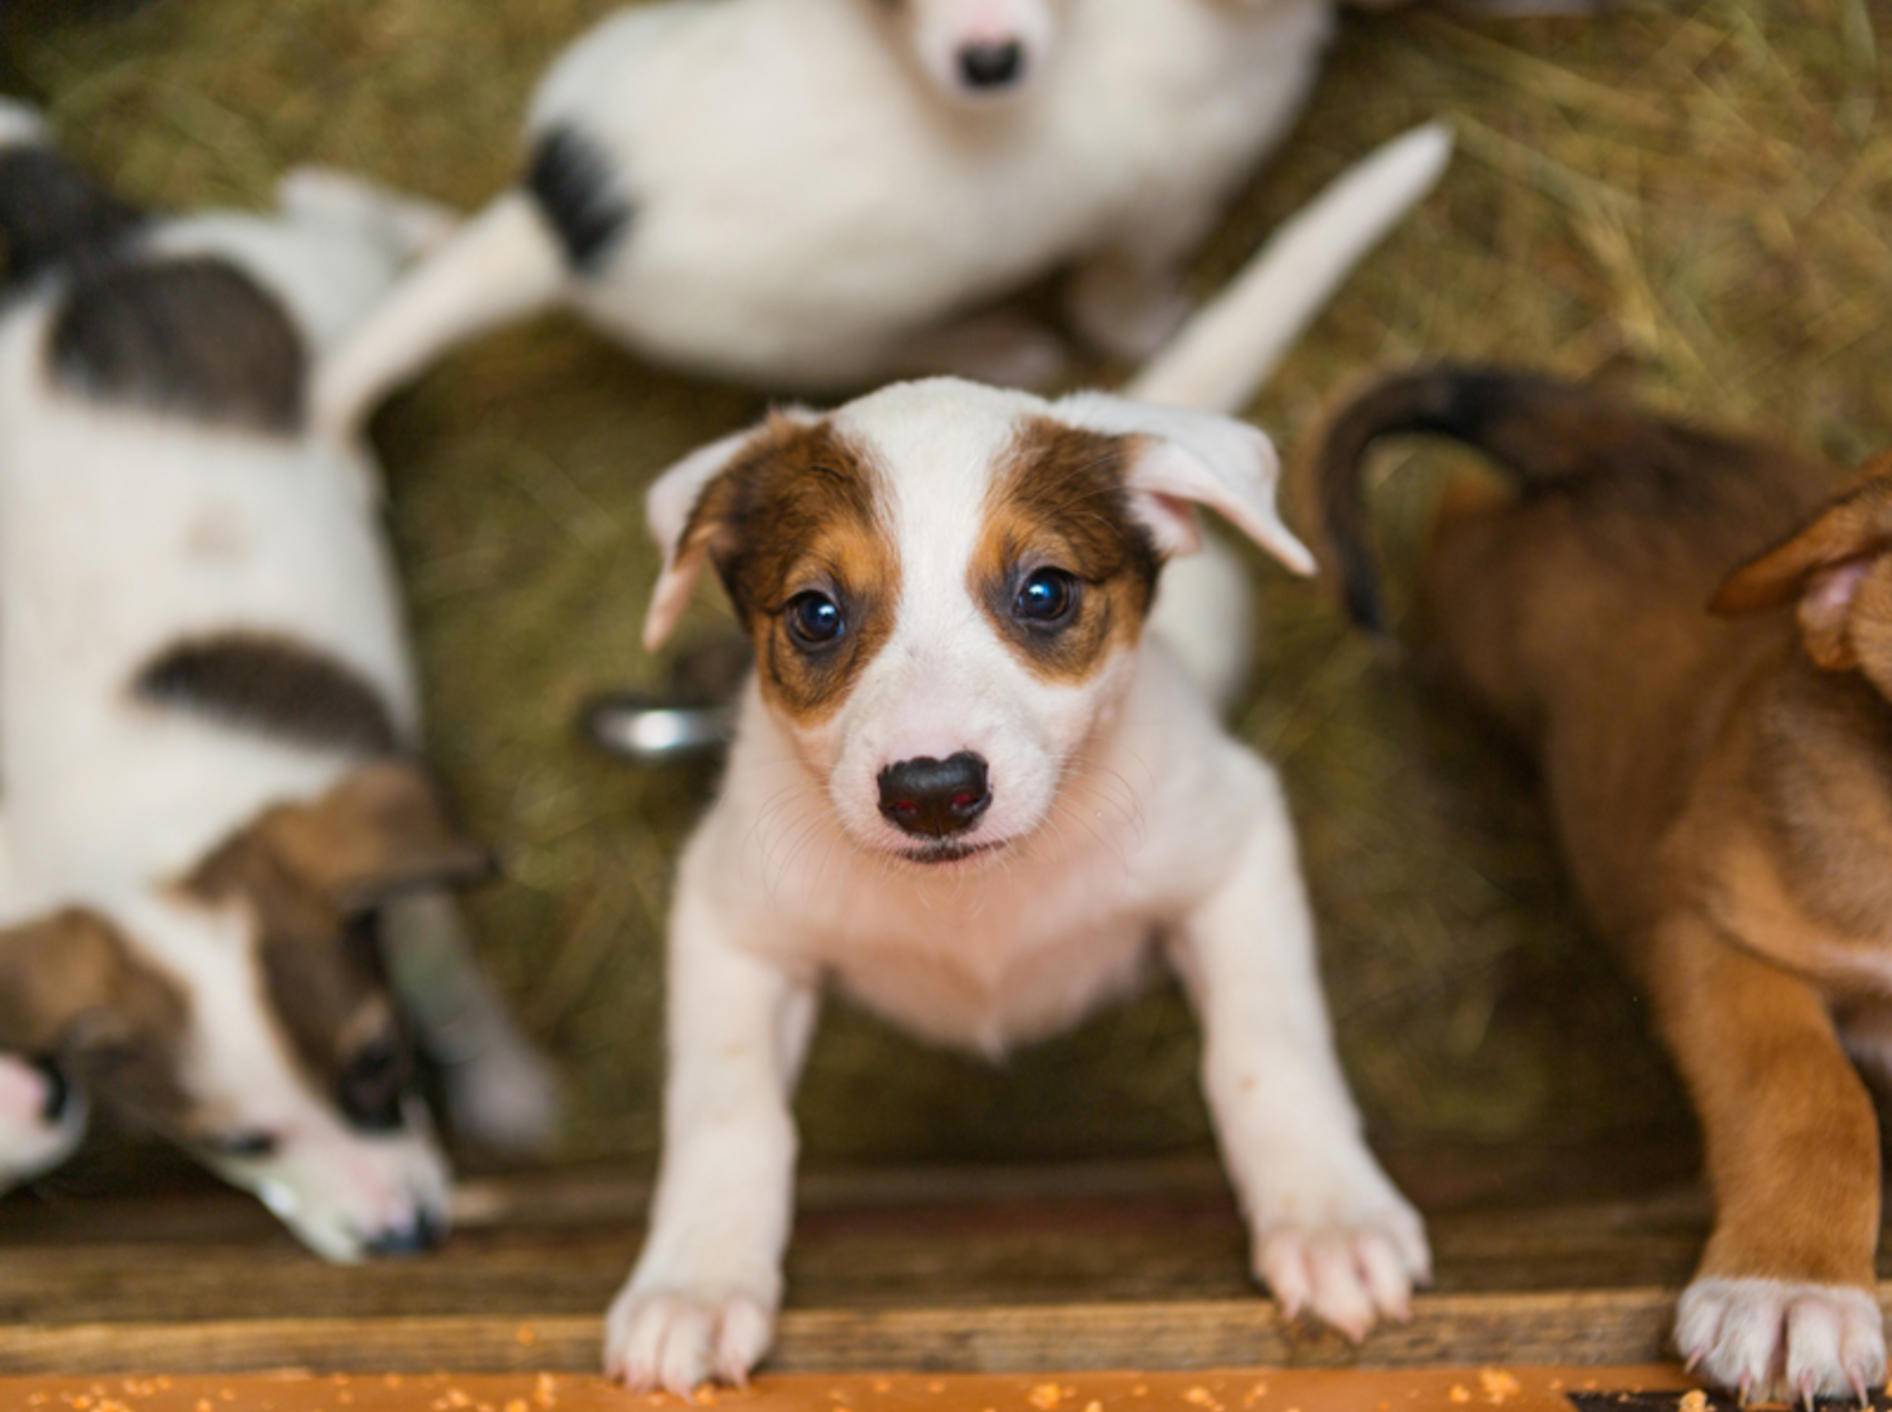 Wer so süße Hundebabys in Kleinanzeigen entdeckt, möchte sie am liebsten sofort kaufen. Aber ist das Angebot auch seriös? – Shutterstock / Okssi